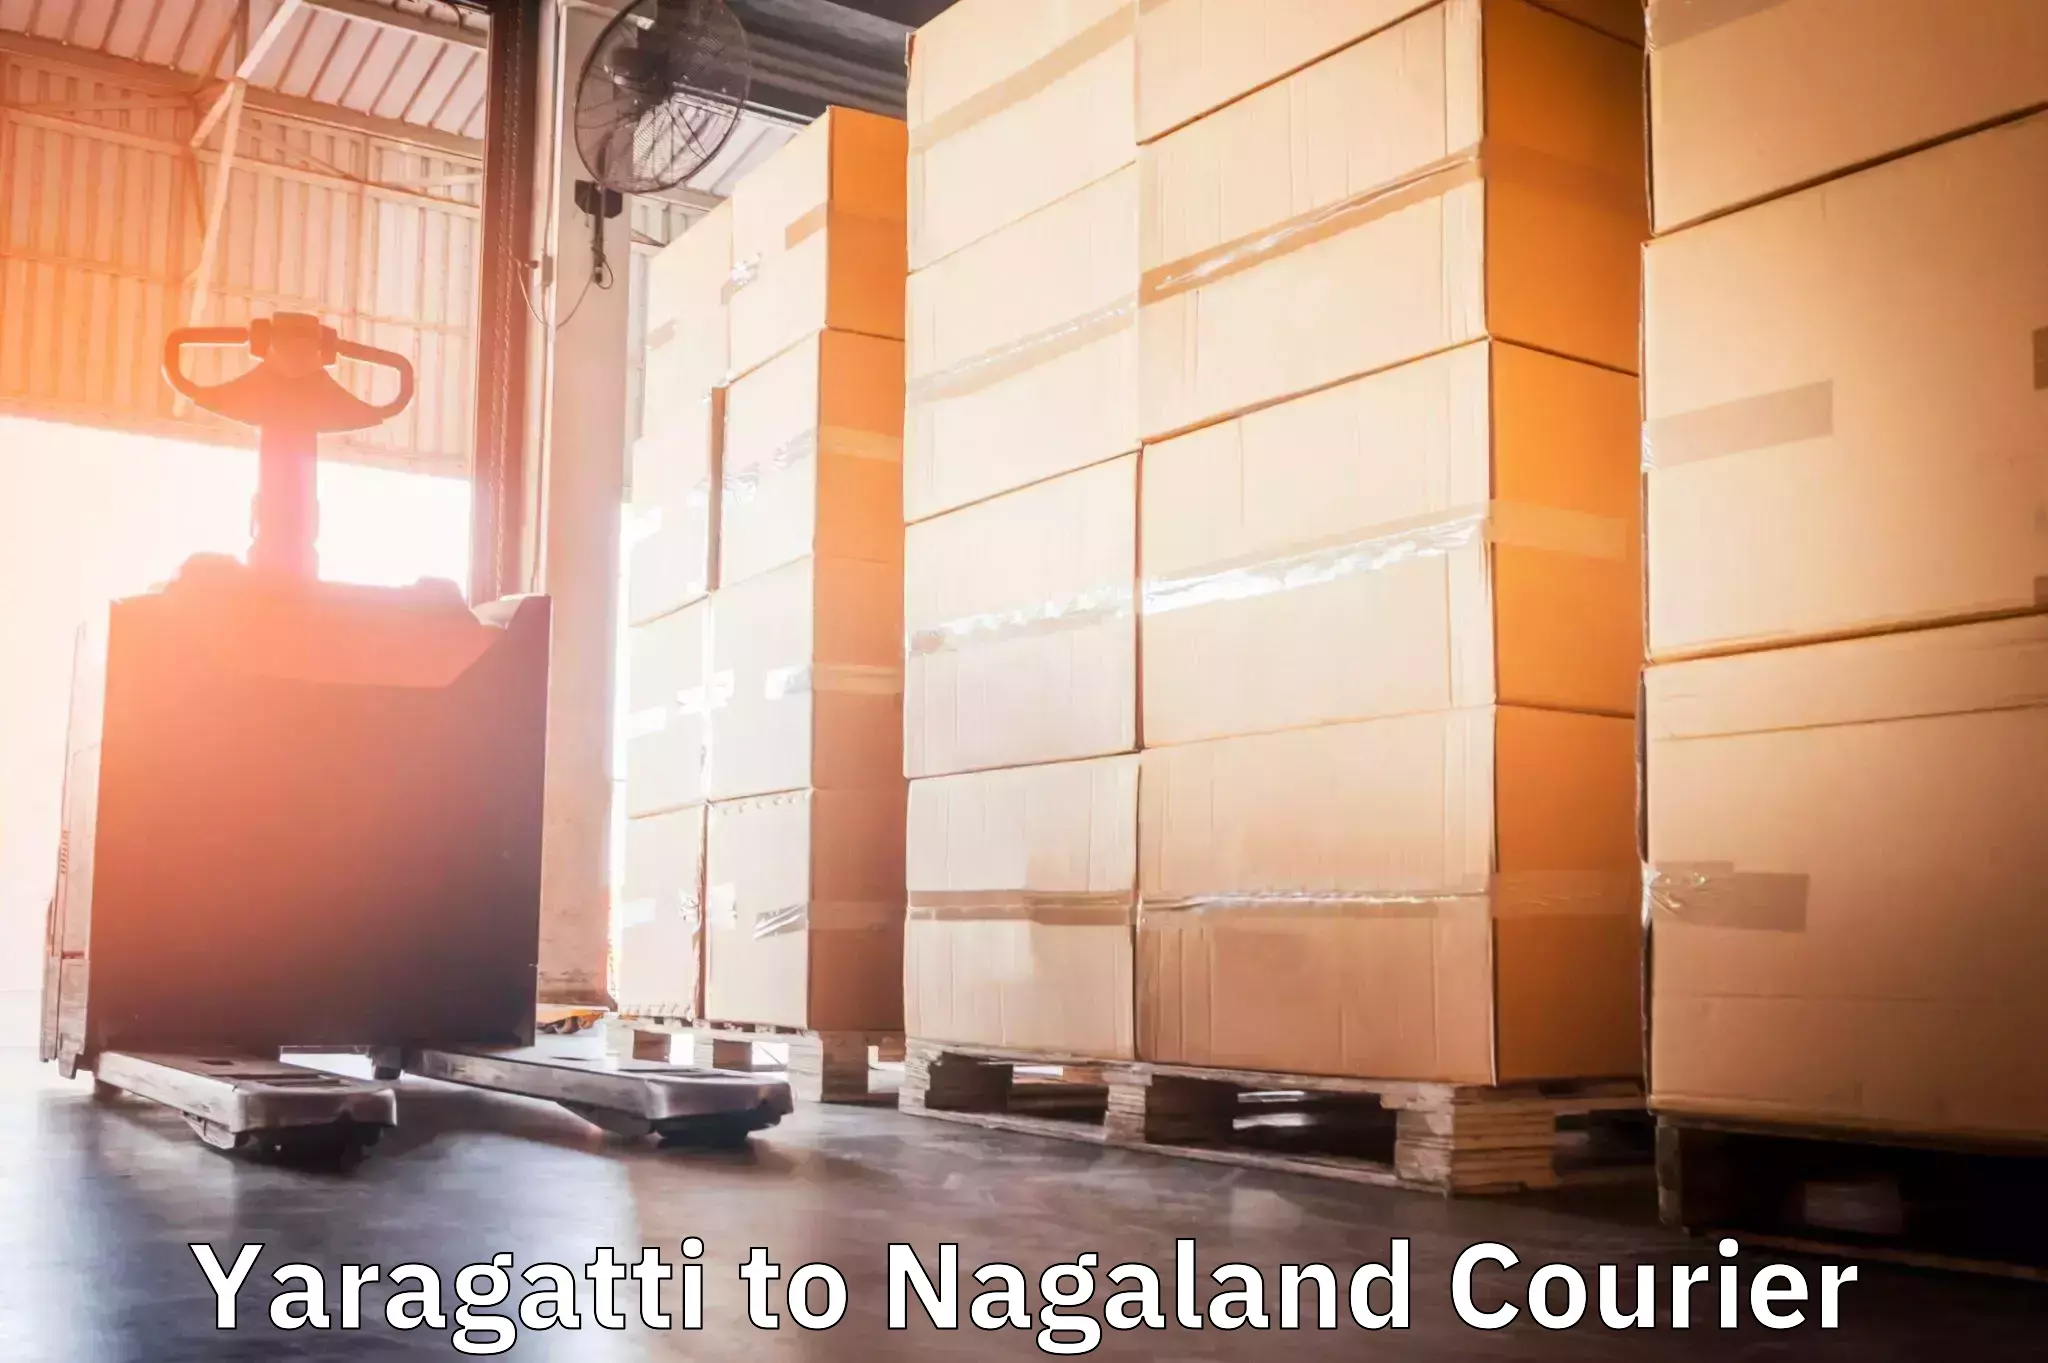 Door-to-door freight service Yaragatti to Dimapur